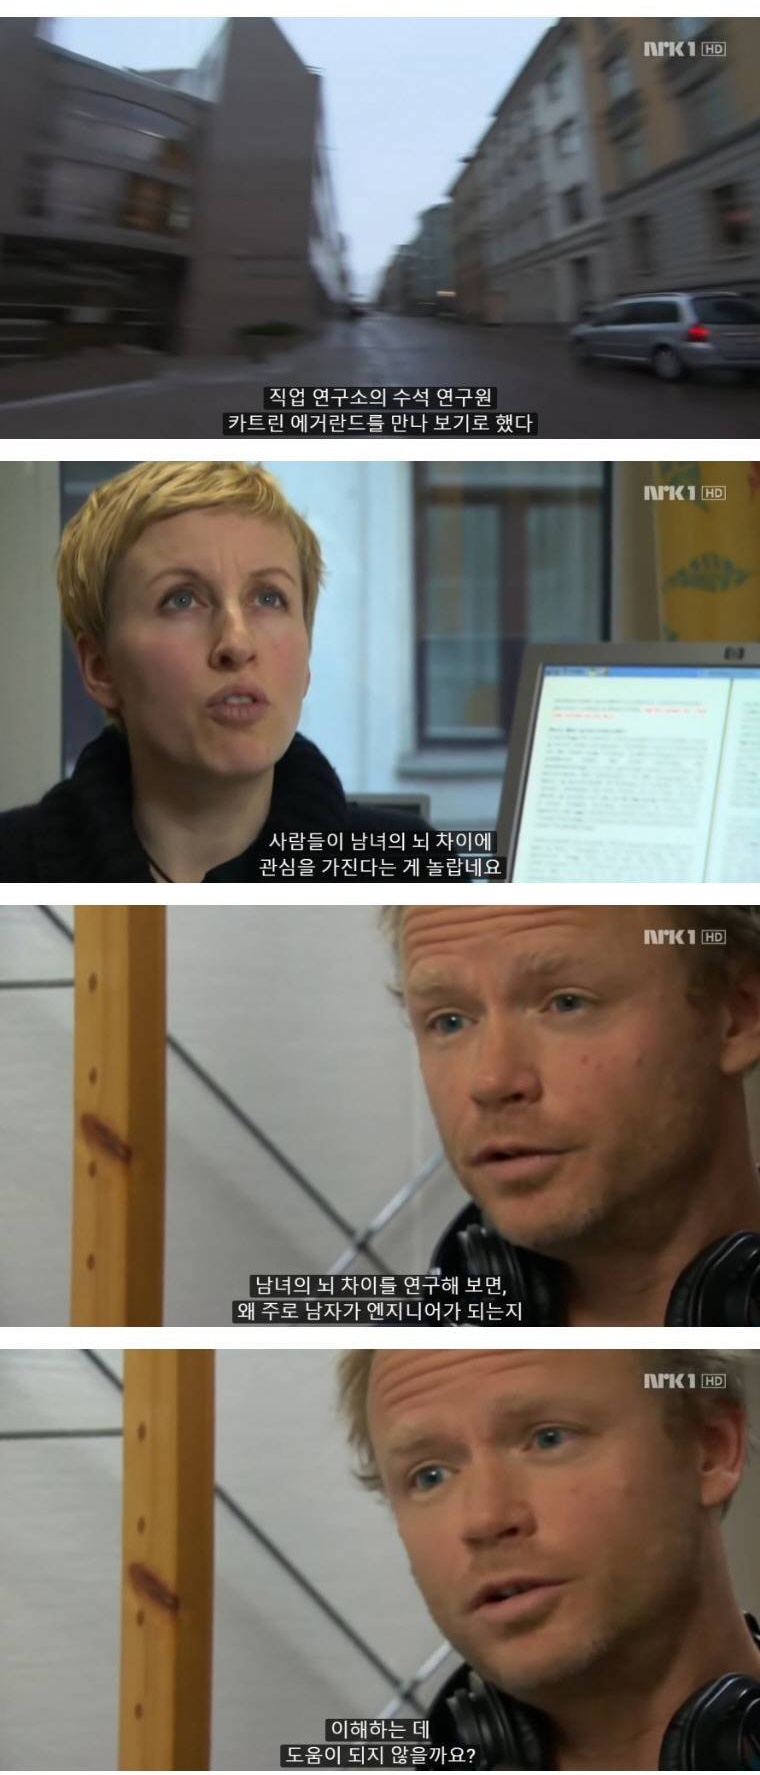 성평등 지수 1위 노르웨이의 남녀 차이